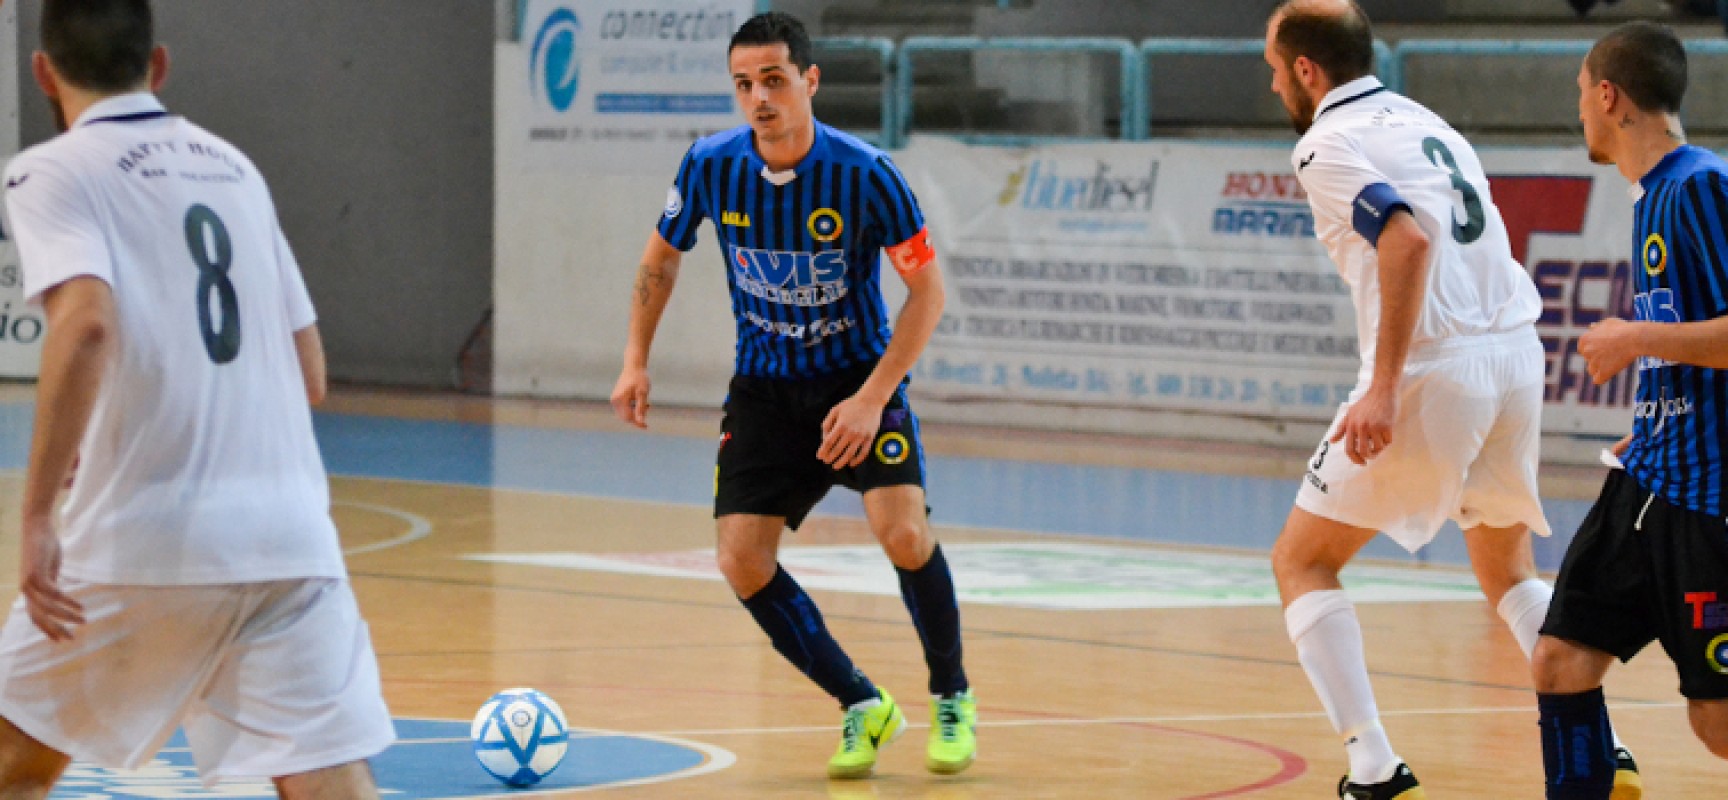 Capitan Caggianelli terza conferma in casa Futsal Bisceglie